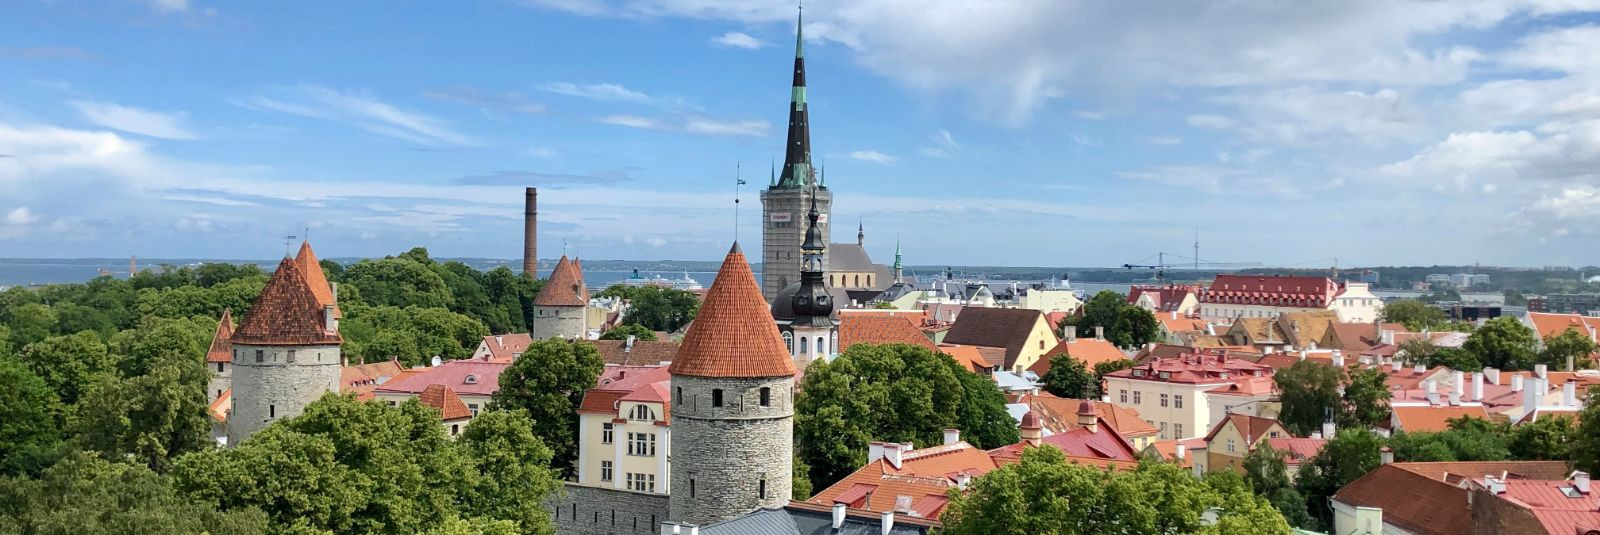 Silveteks OÜ transporditeenus Viljandi ja Tallinna vahel pakub klientidele kiiret ja usaldusväärset kaubavedu. Kui vajad oma kauba kohaletoimetamist sama päeva 